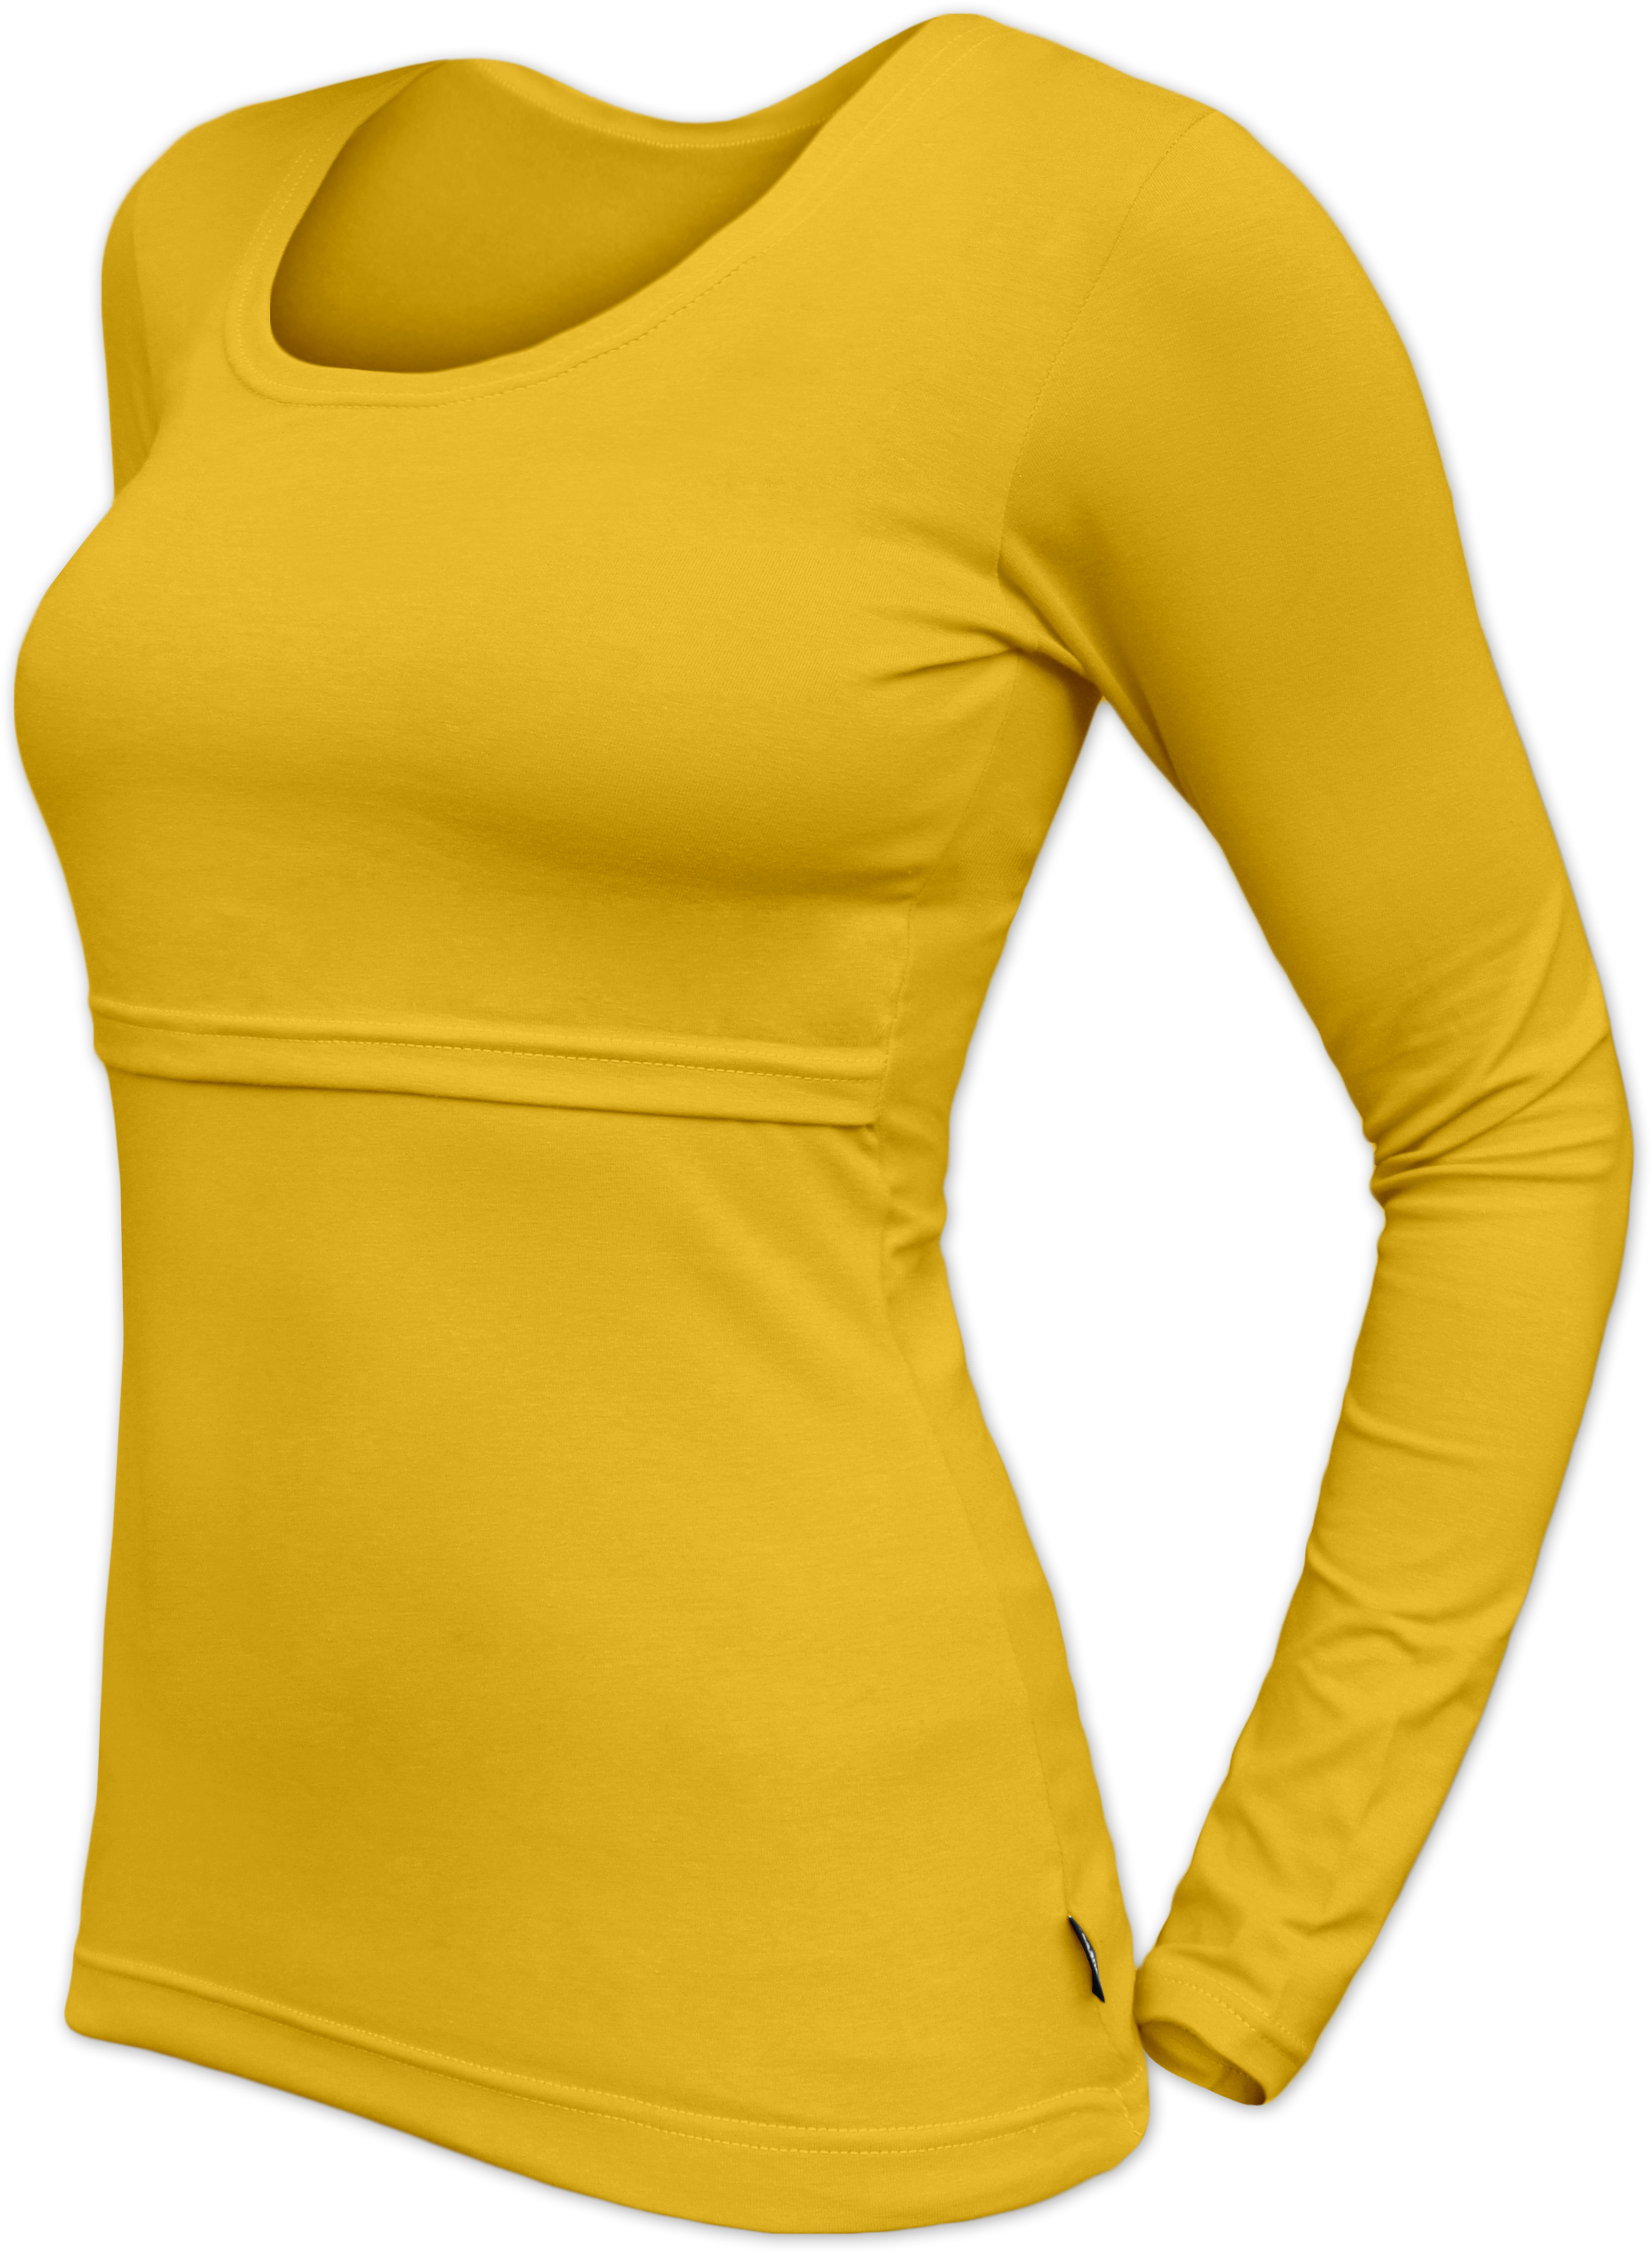 Kojicí tričko Kateřina, dlouhý rukáv, žlutooranžové